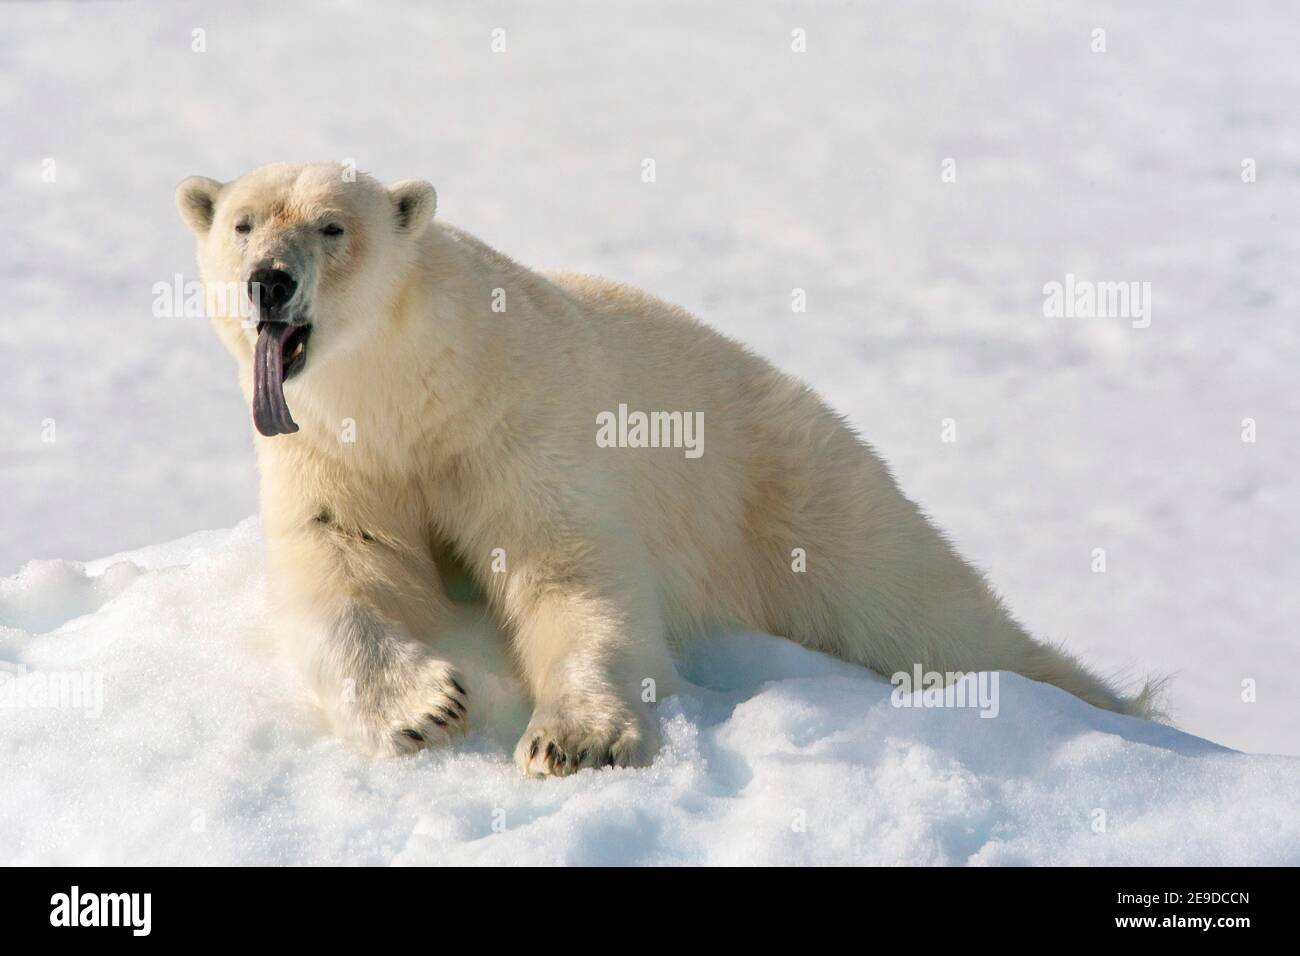 Ours polaire (Ursus maritimus), reposant sur une banque de neige, donnant un énorme bâillement et montrant sa grande langue, la Norvège, Svalbard Banque D'Images